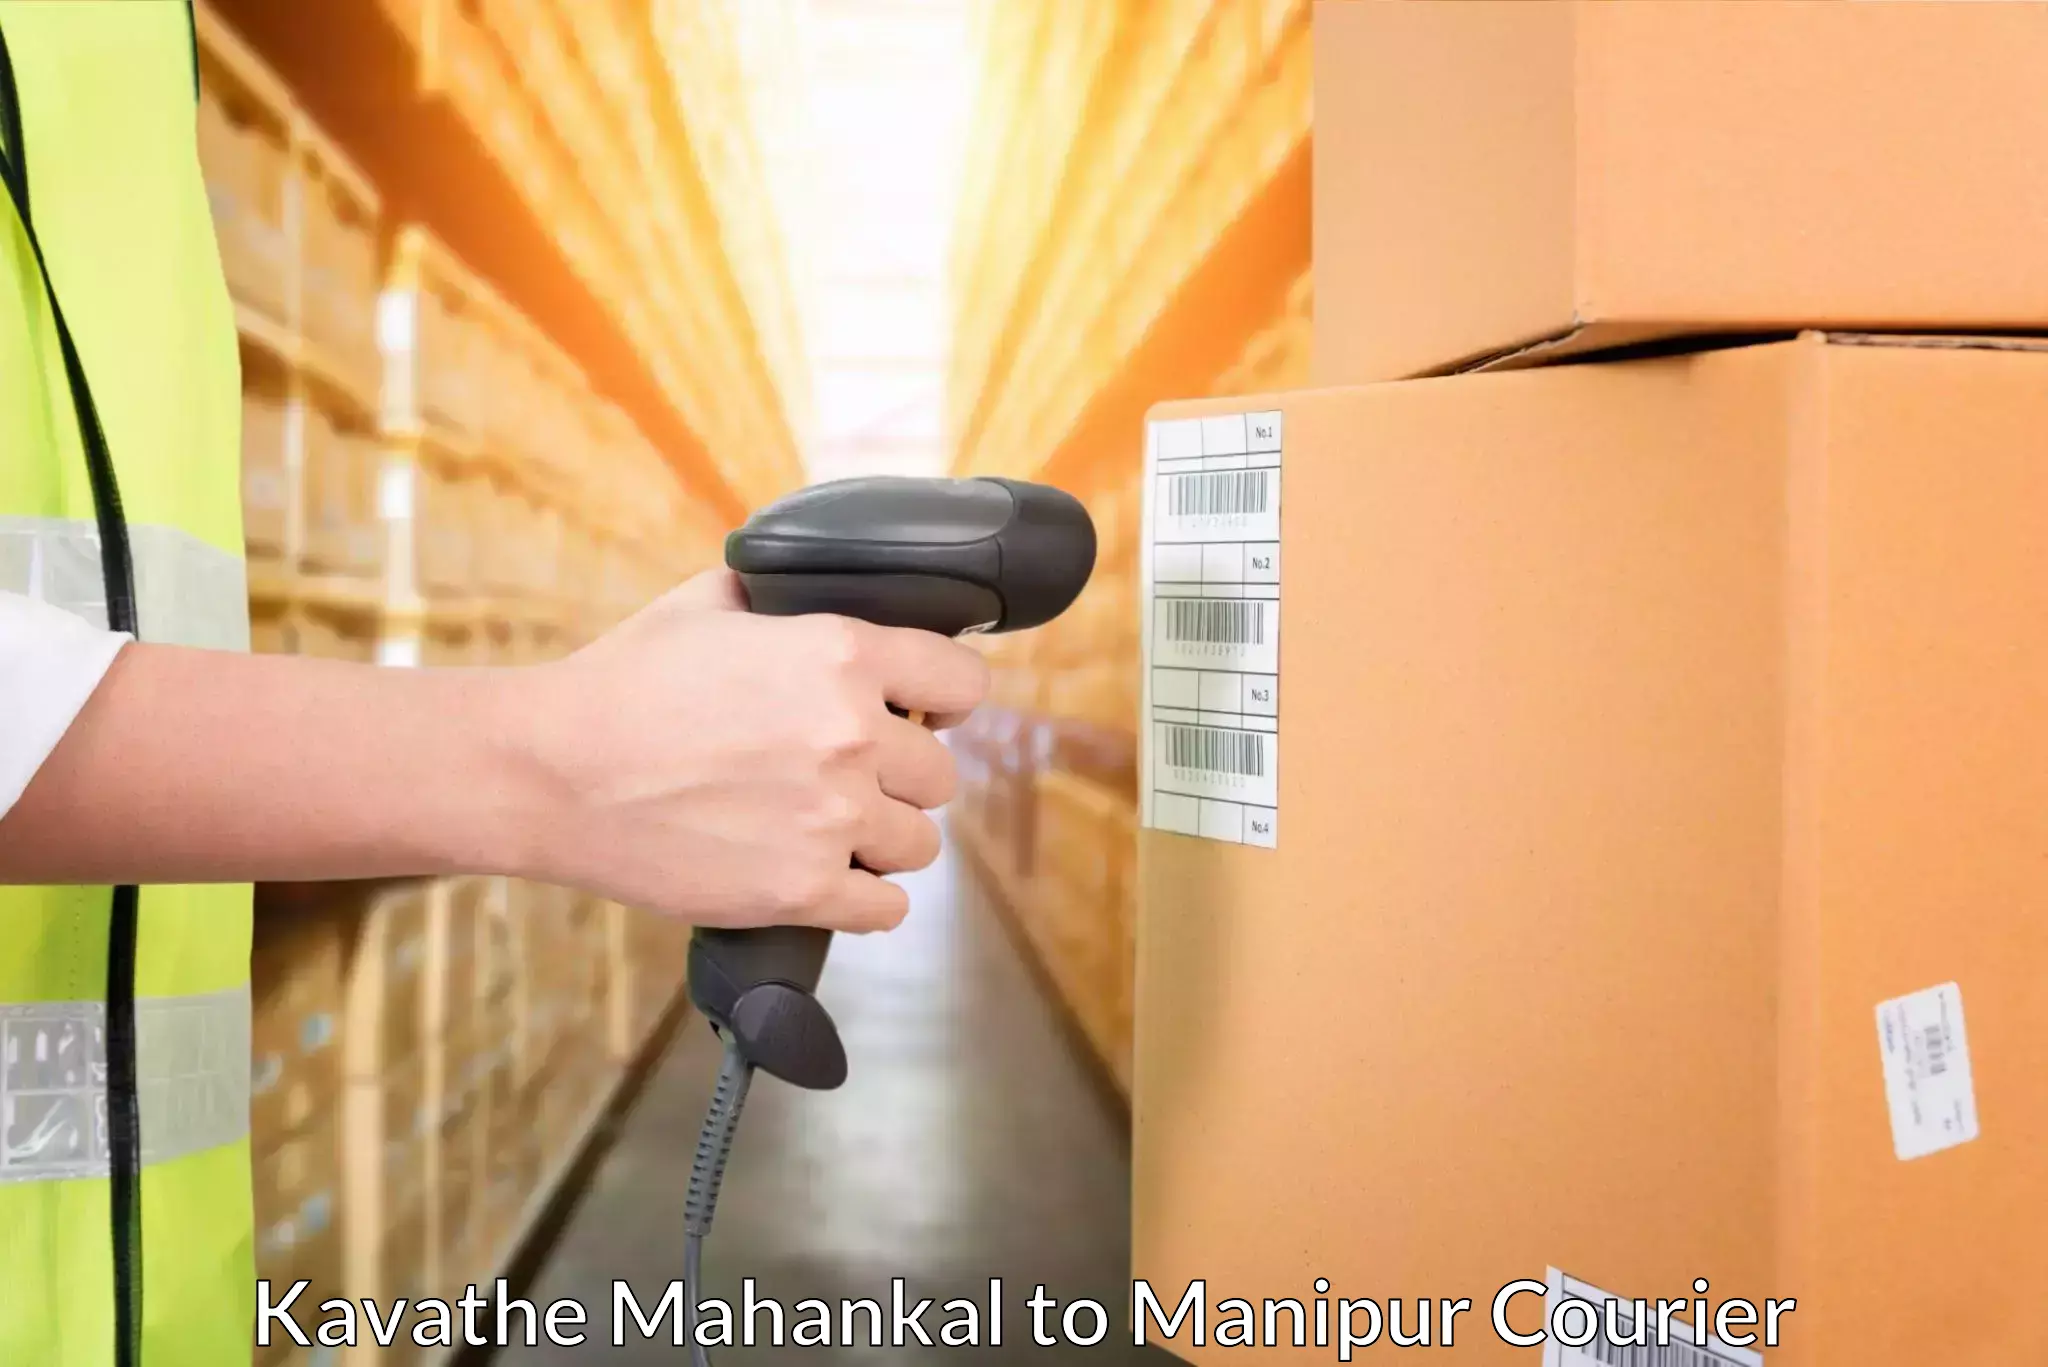 Logistics service provider Kavathe Mahankal to Kanti